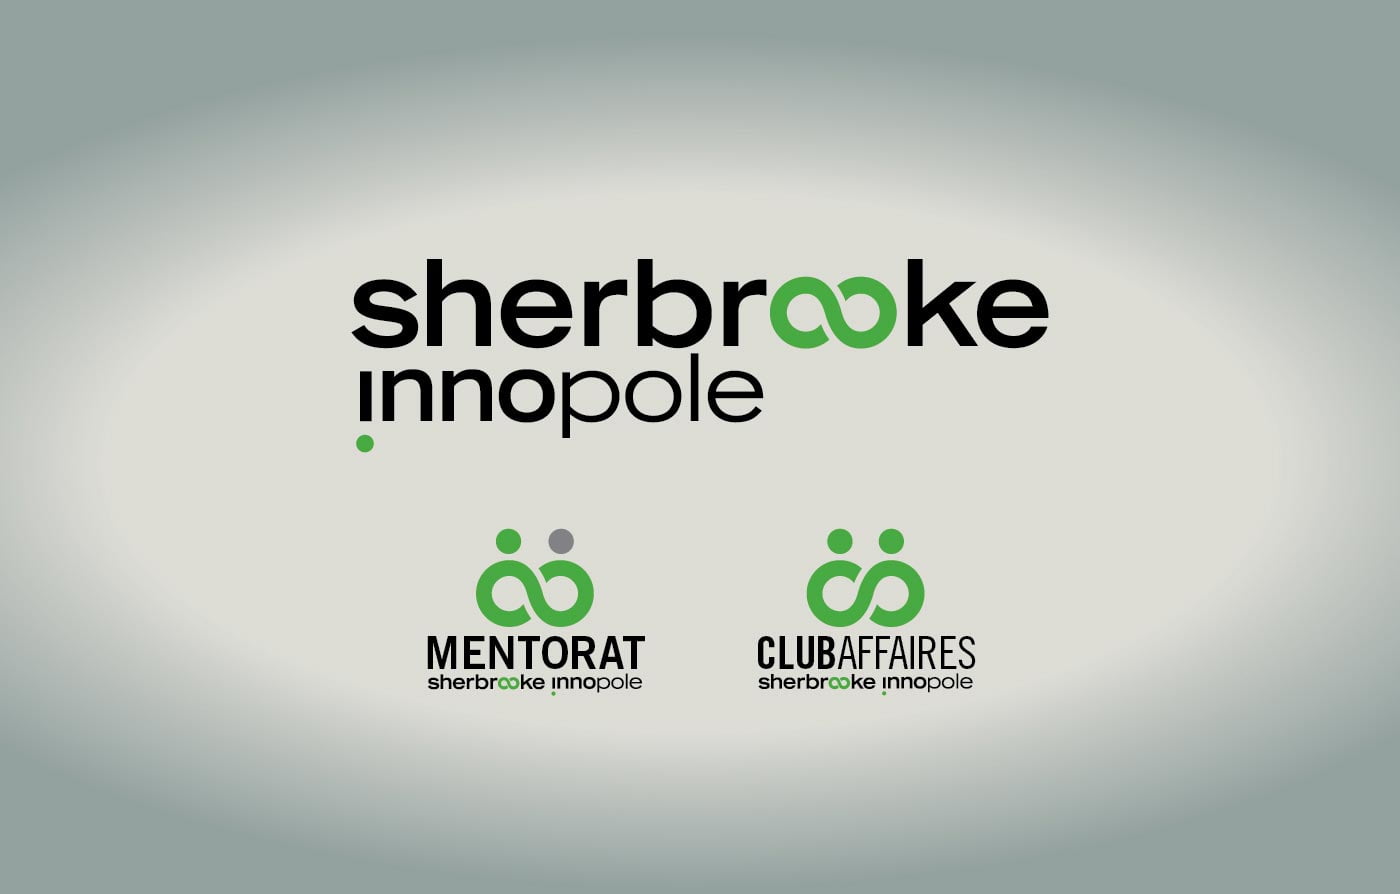 Sherbrooke innopole